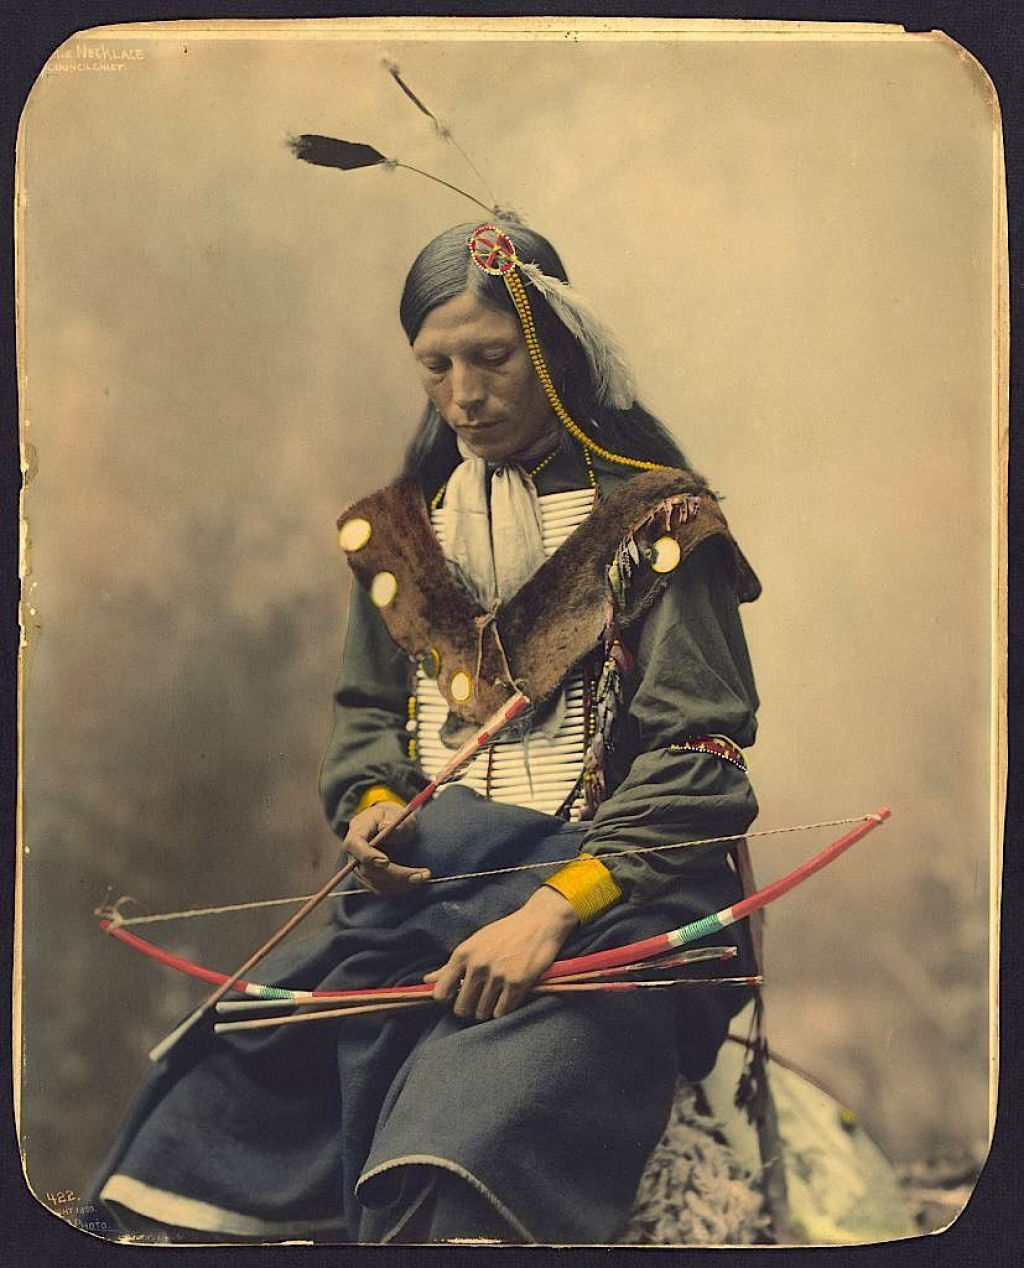 Impressionantes fotos históricas coloridas de nativos americanos do final do século 19 e início do século 20 13